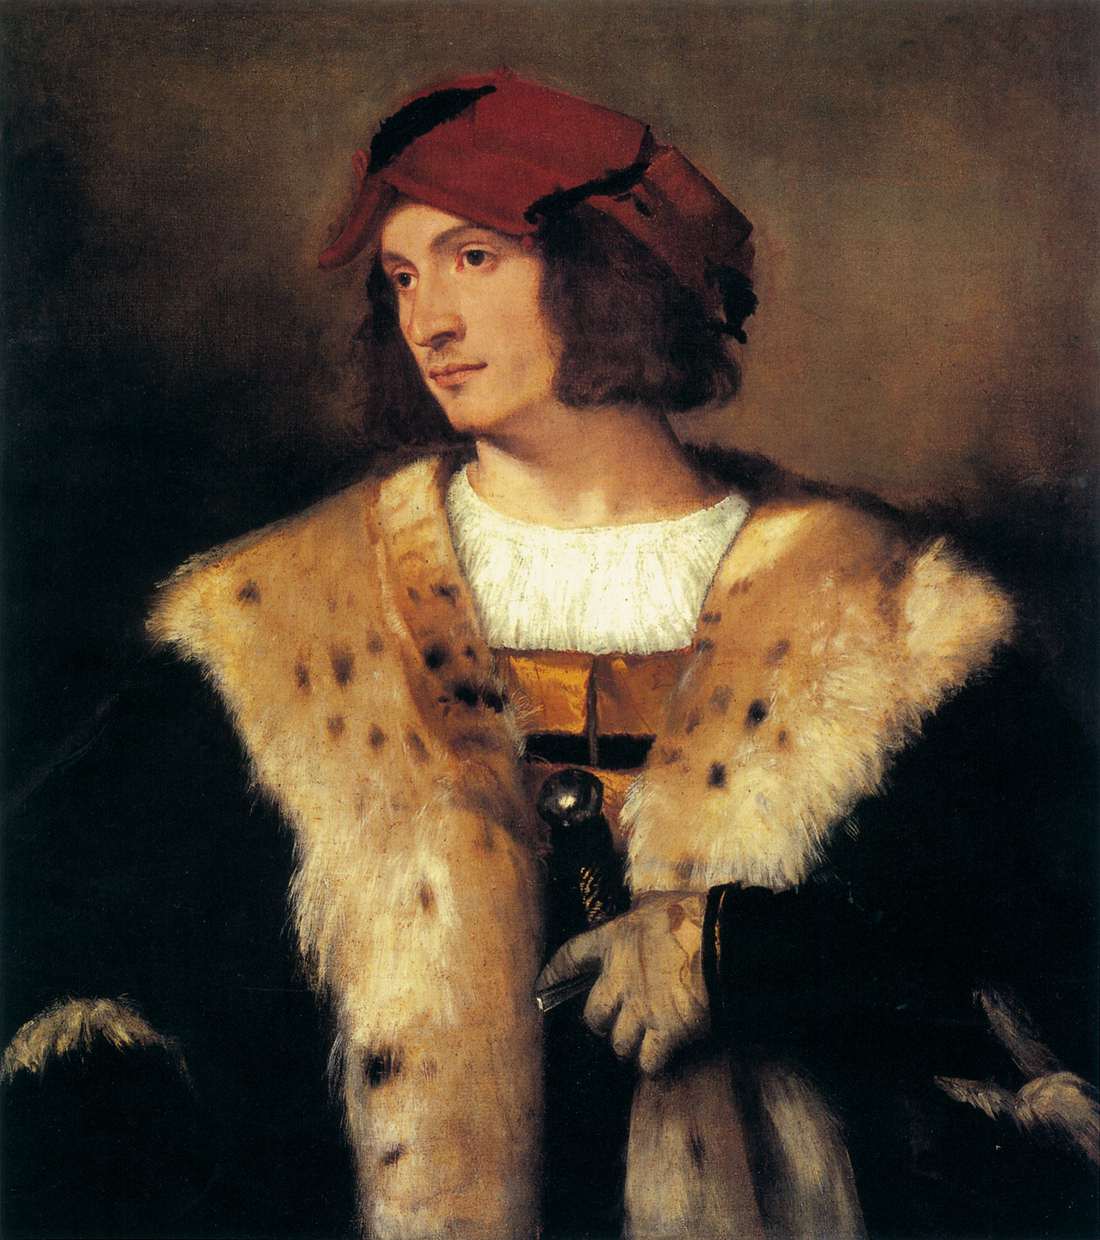 Porträt eines Mannes mit einer roten Kappe